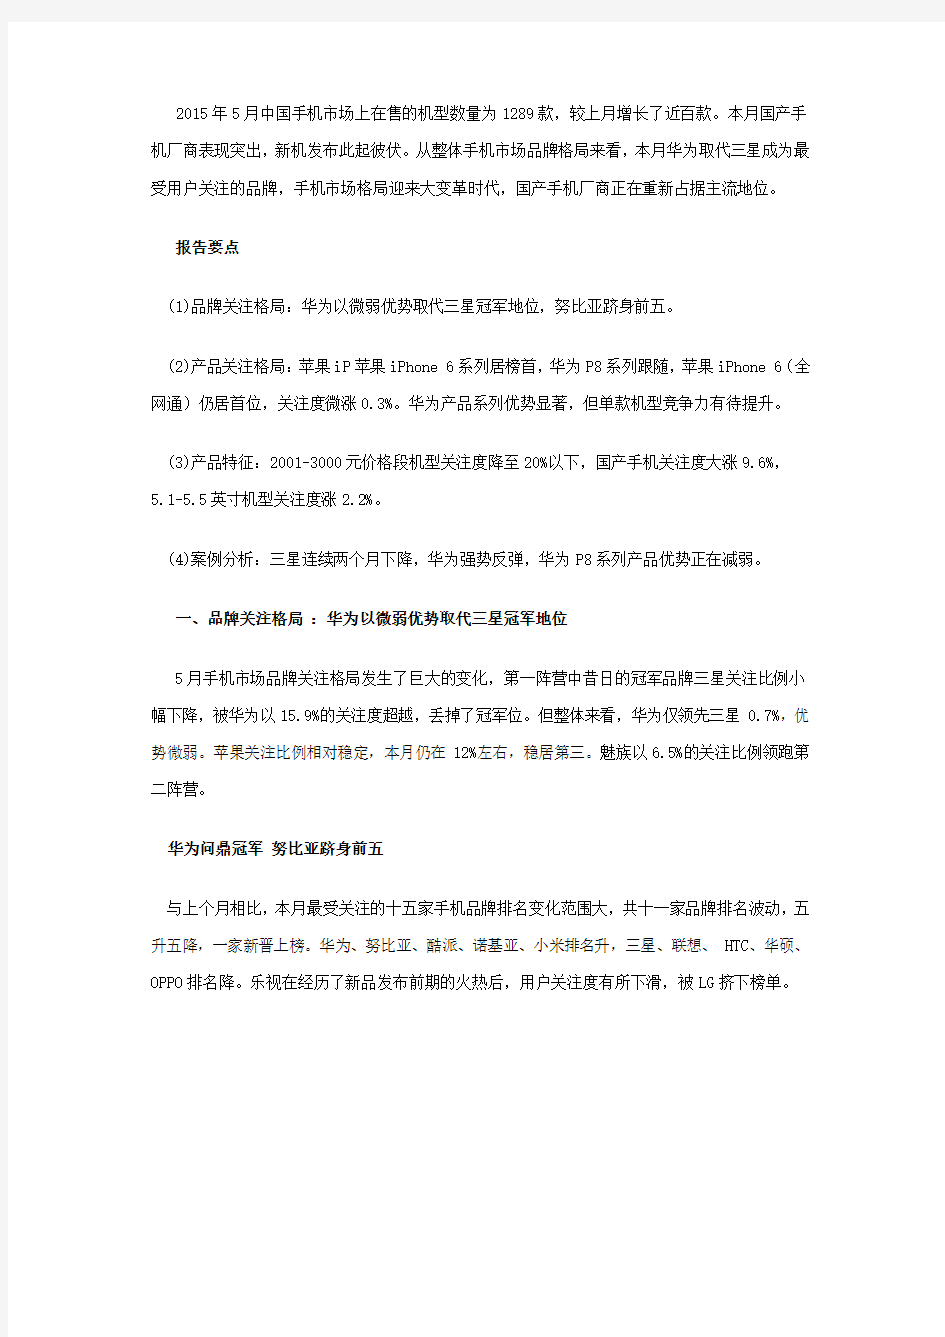 2015年中国手机市场分析报告